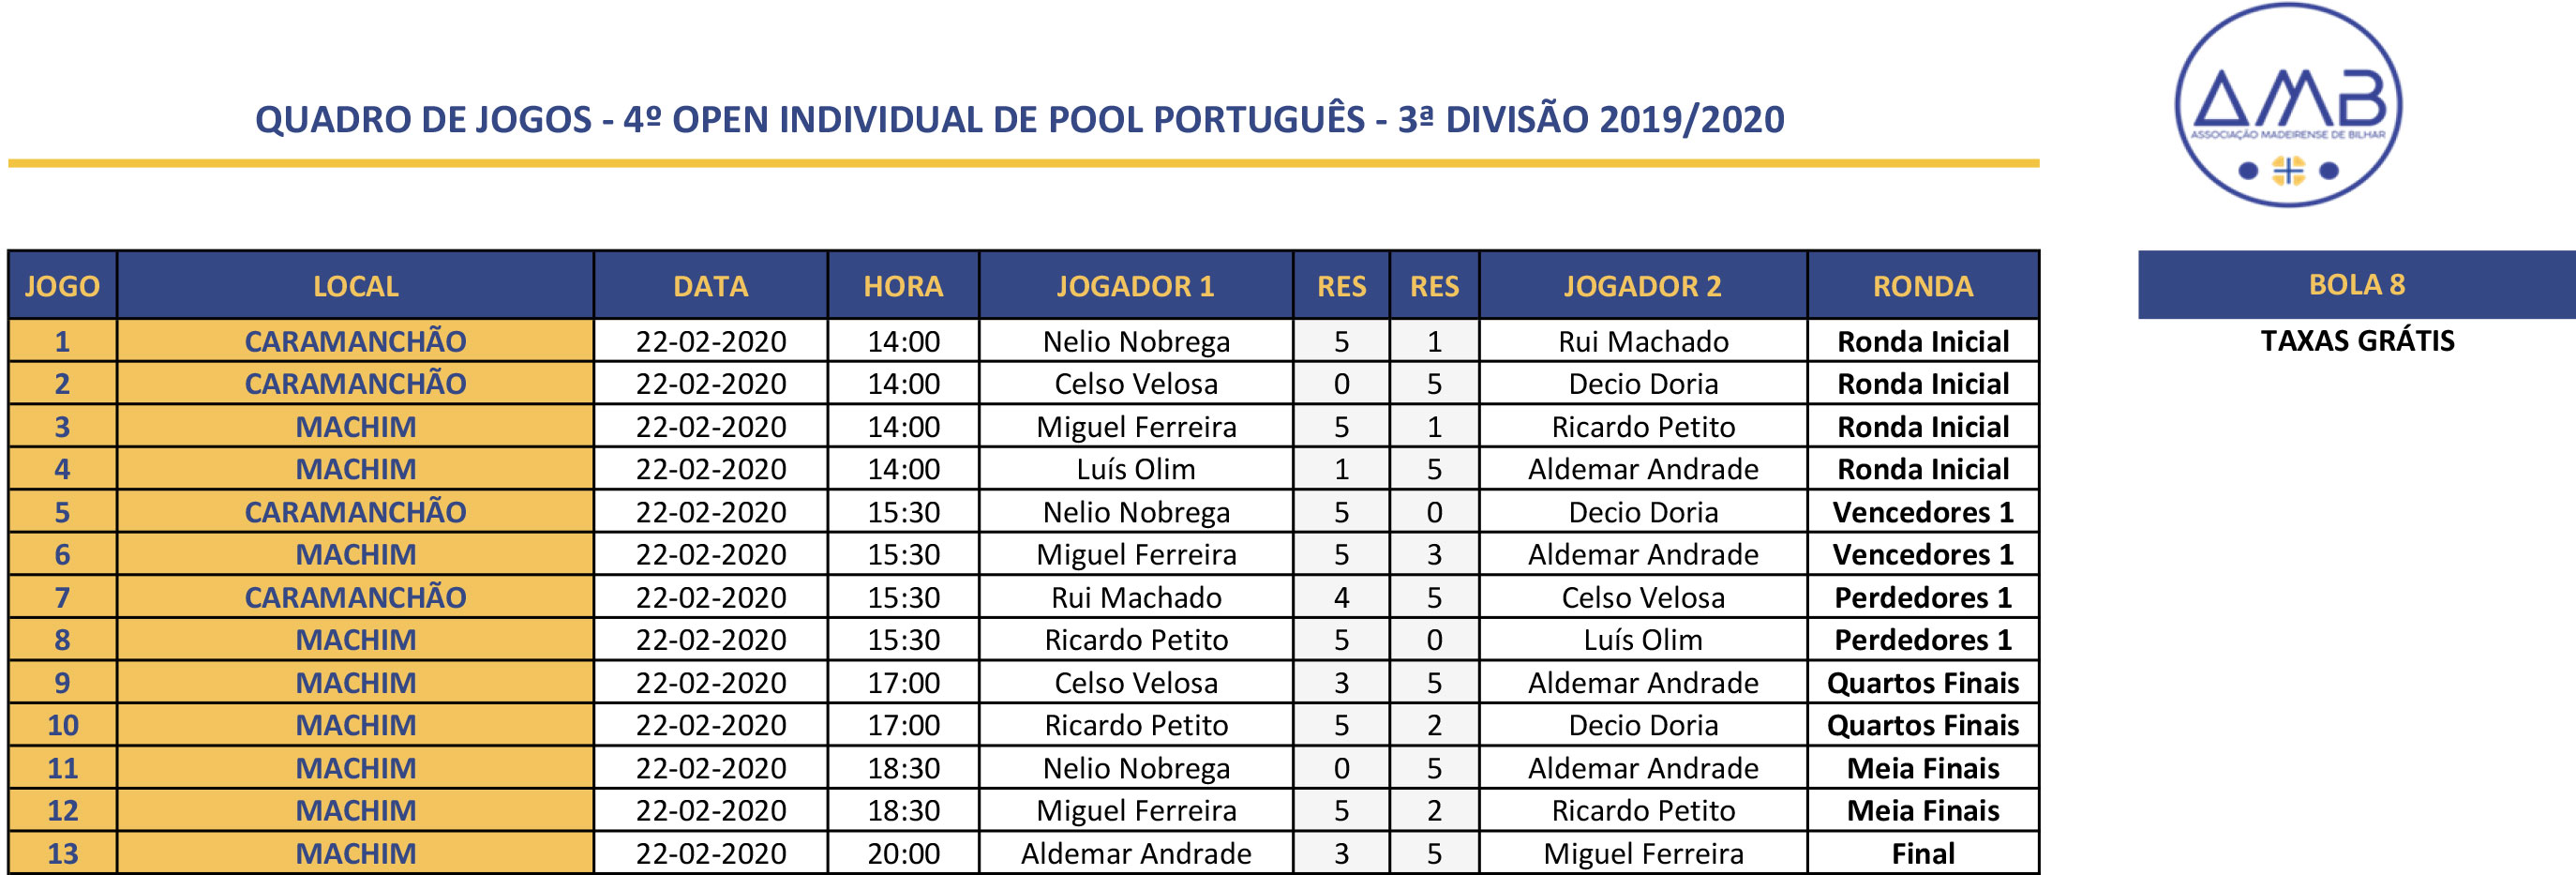 4º Open Individual de POOL PORTUGUêS MASCULINO 2018-2019 - 3ª Divisão Quadro